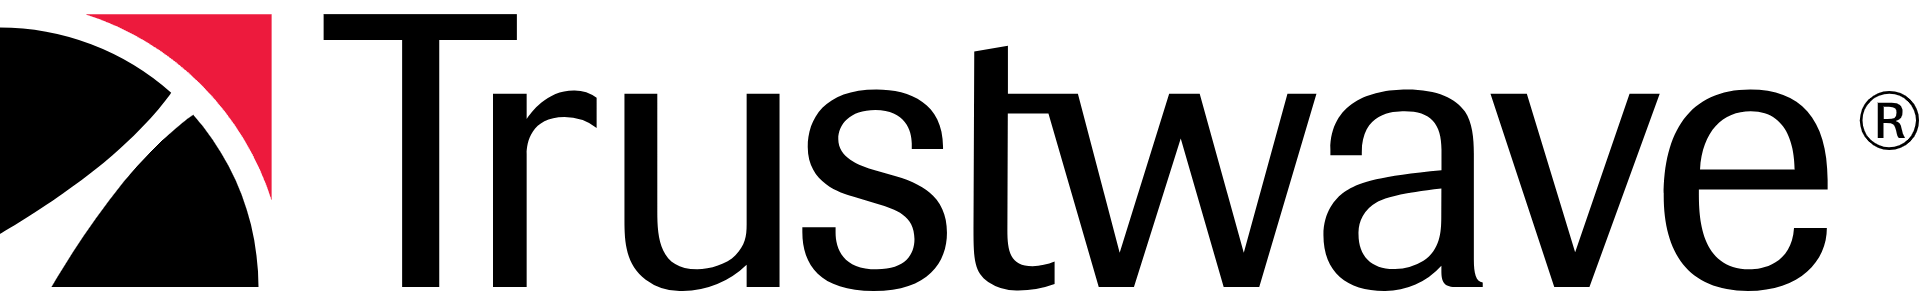 TrustWave SSL Certificates & Lifecycle Management